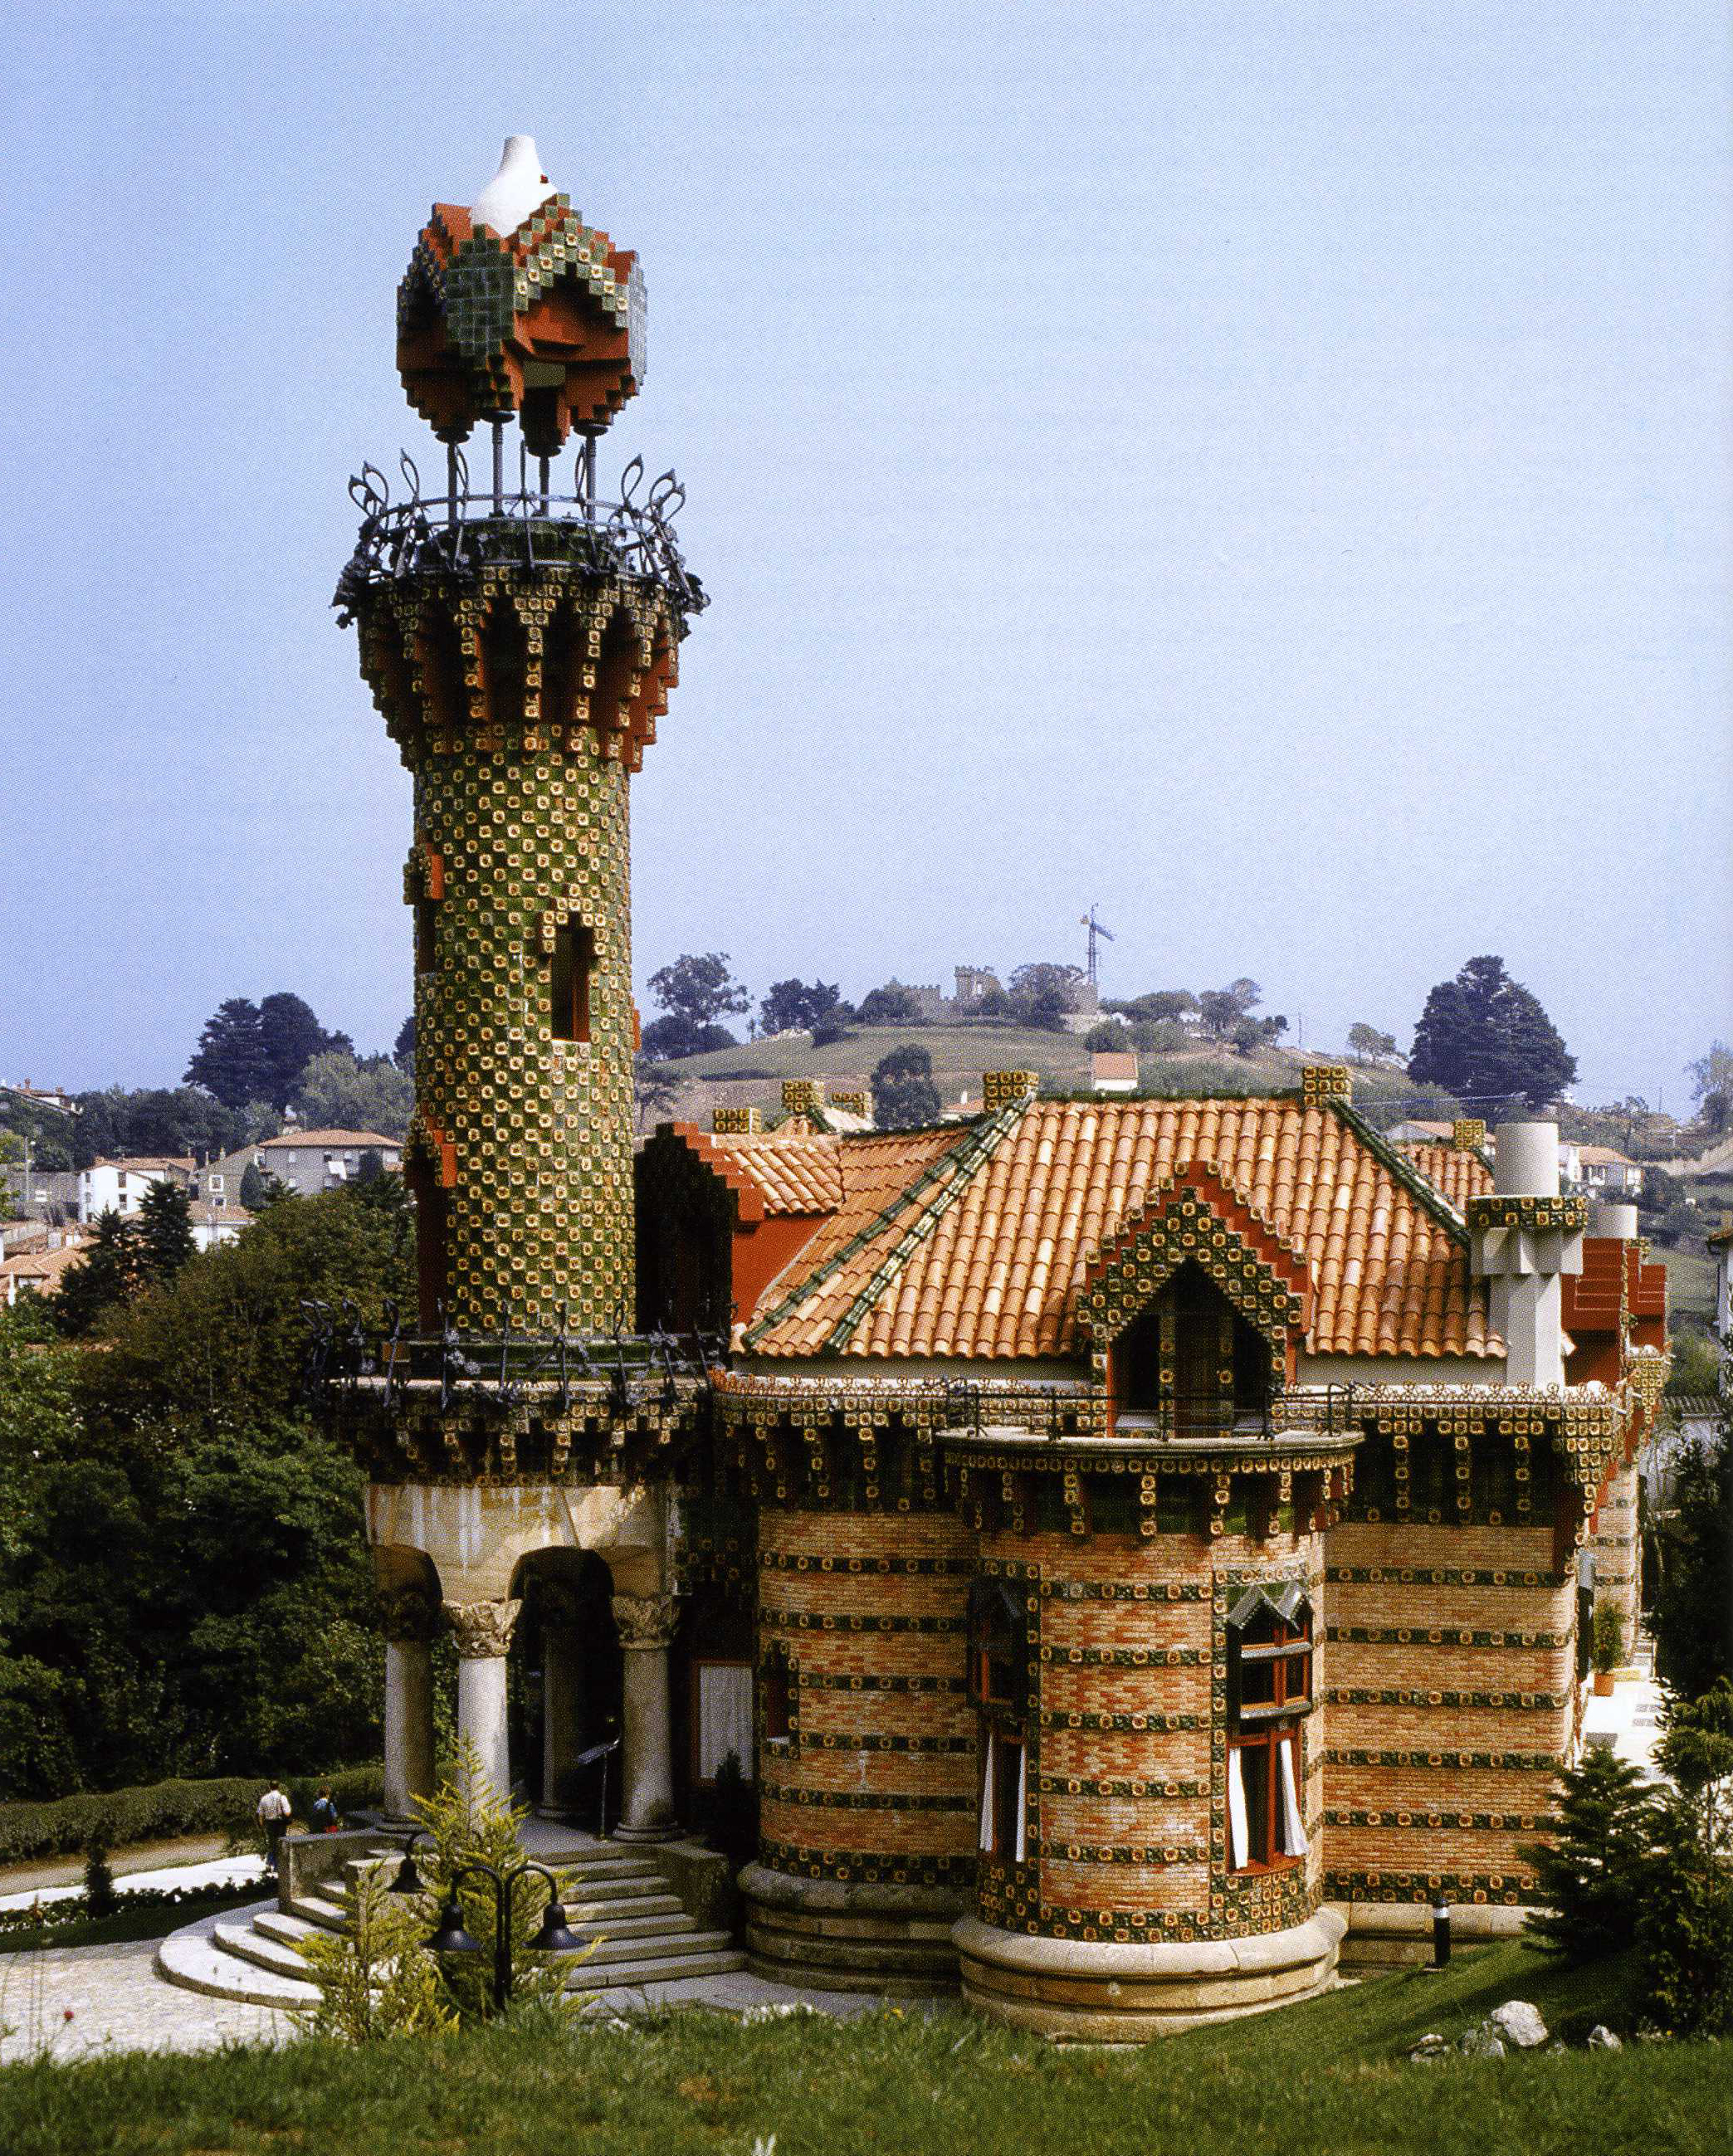 Capricho de Gaudí | Comillas, Spain Attractions - Lonely 